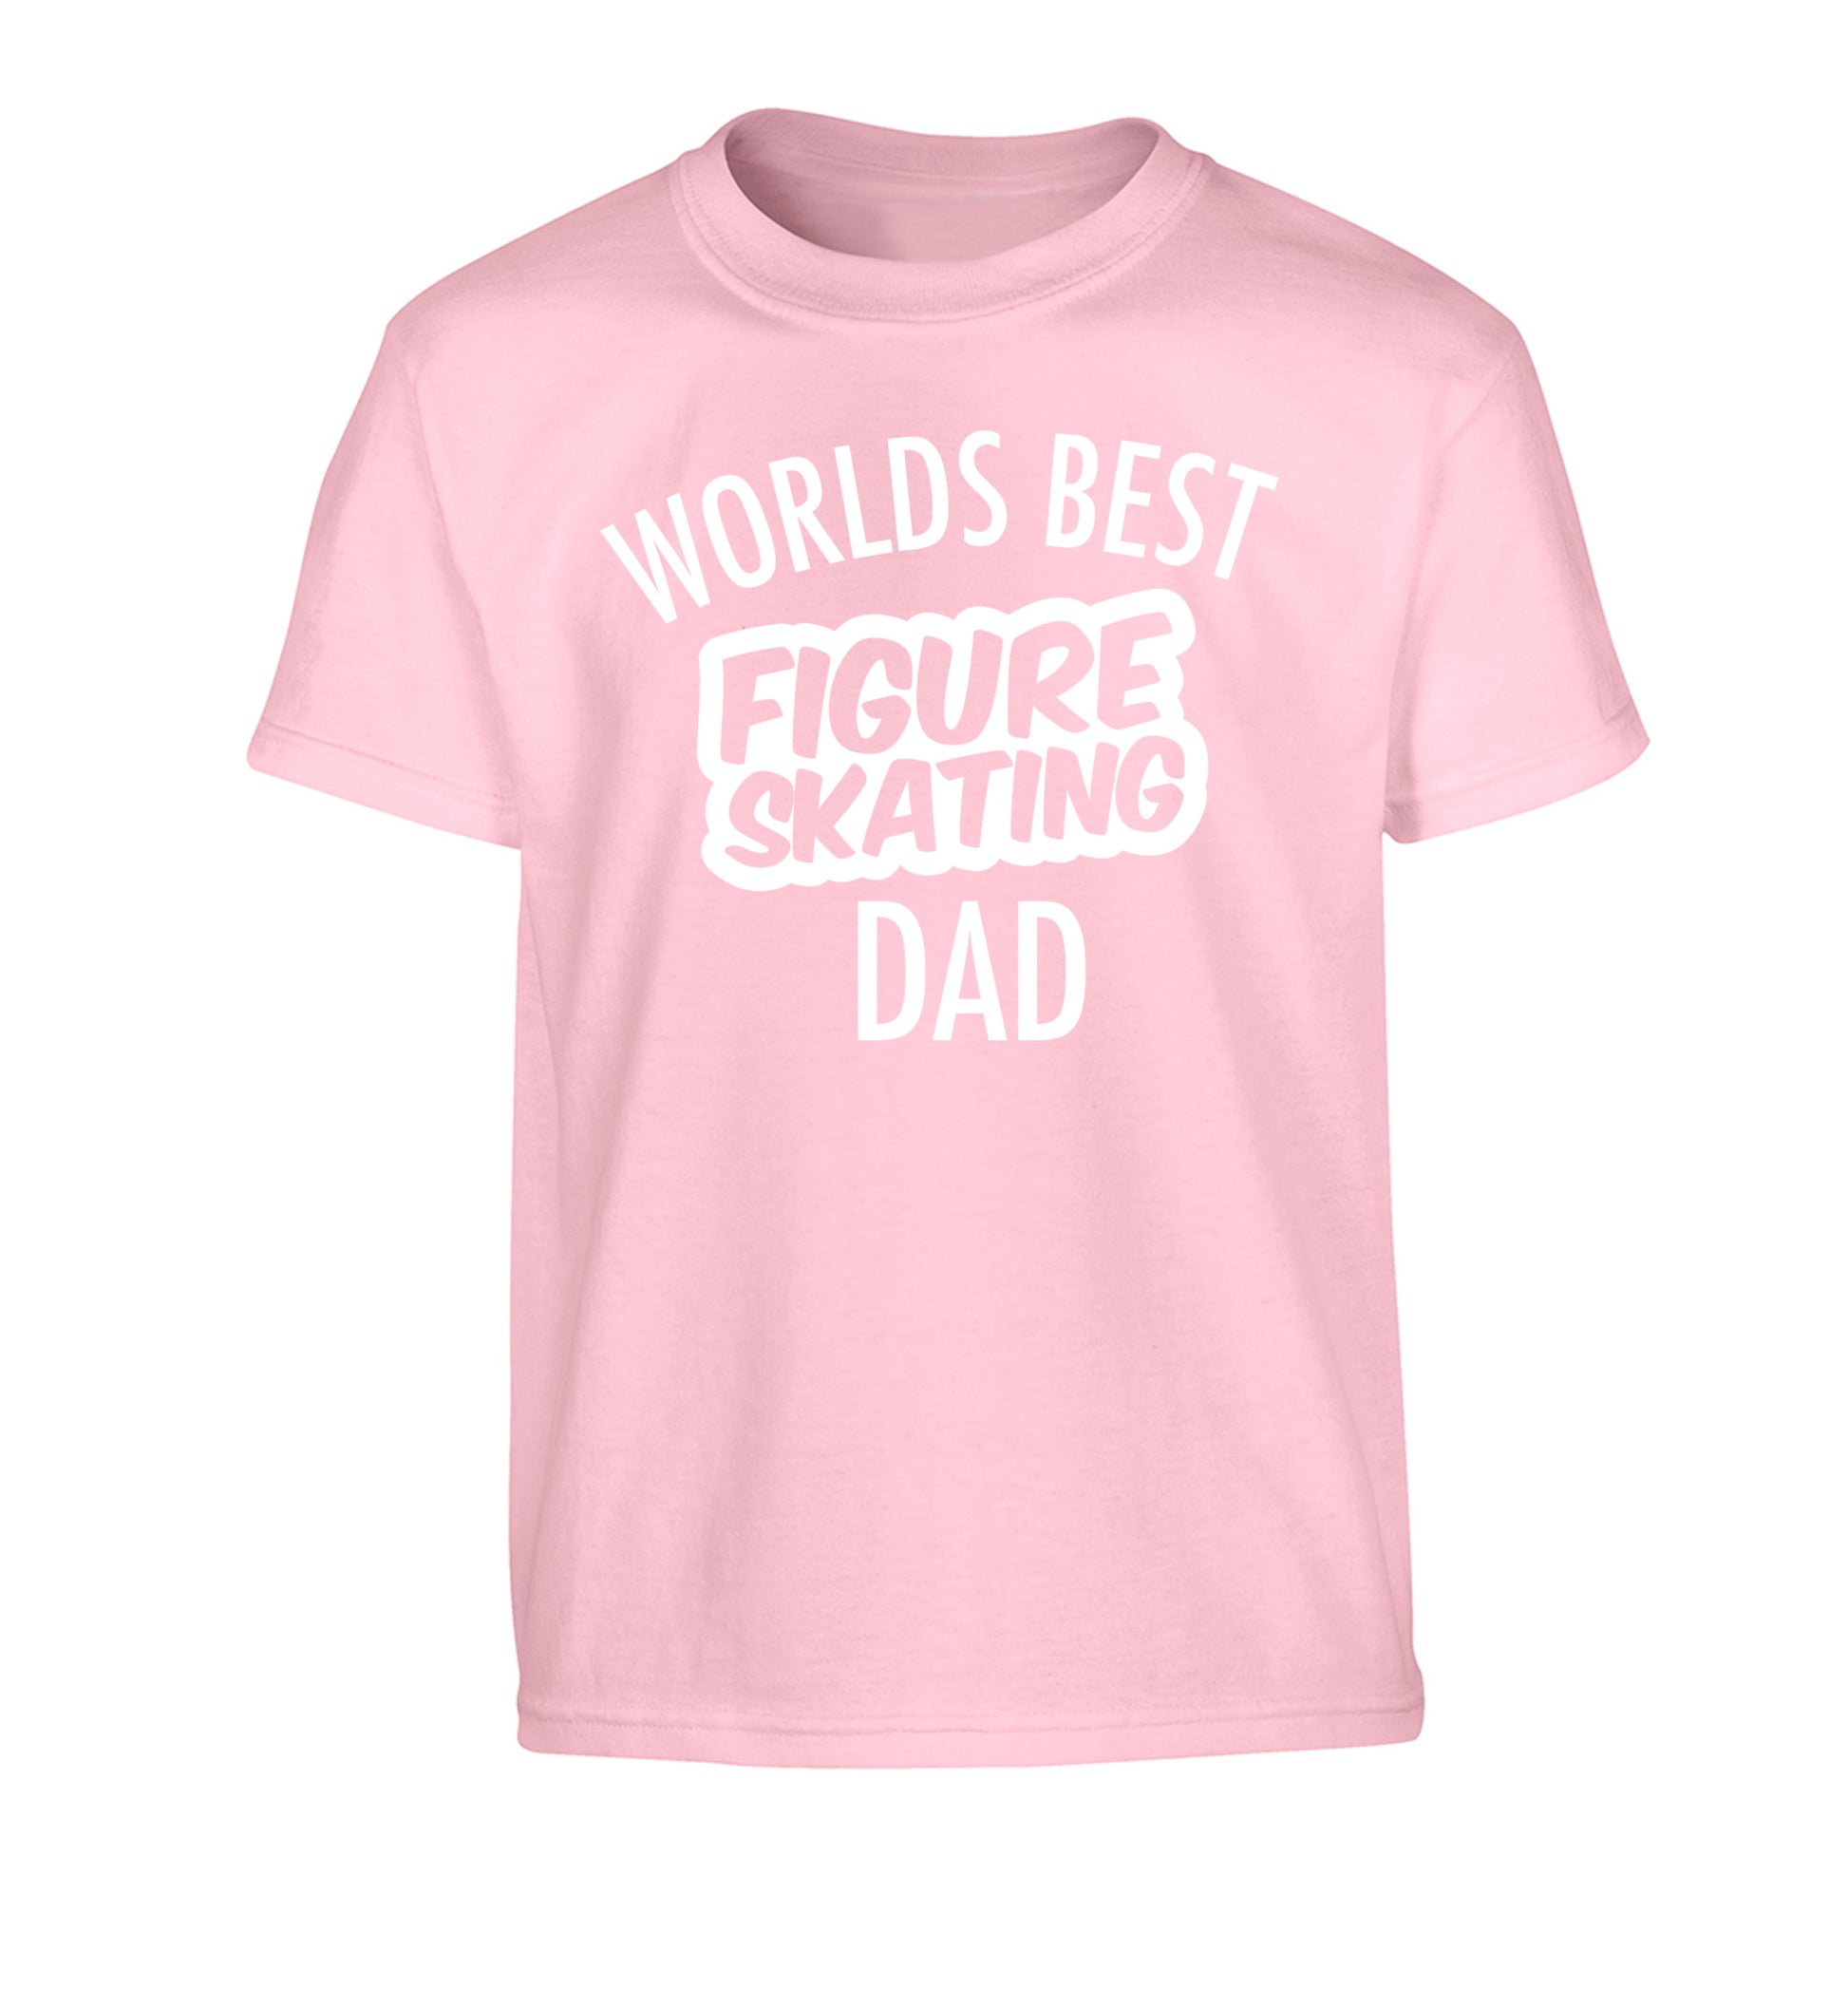 Worlds best figure skating dad Children's light pink Tshirt 12-14 Years